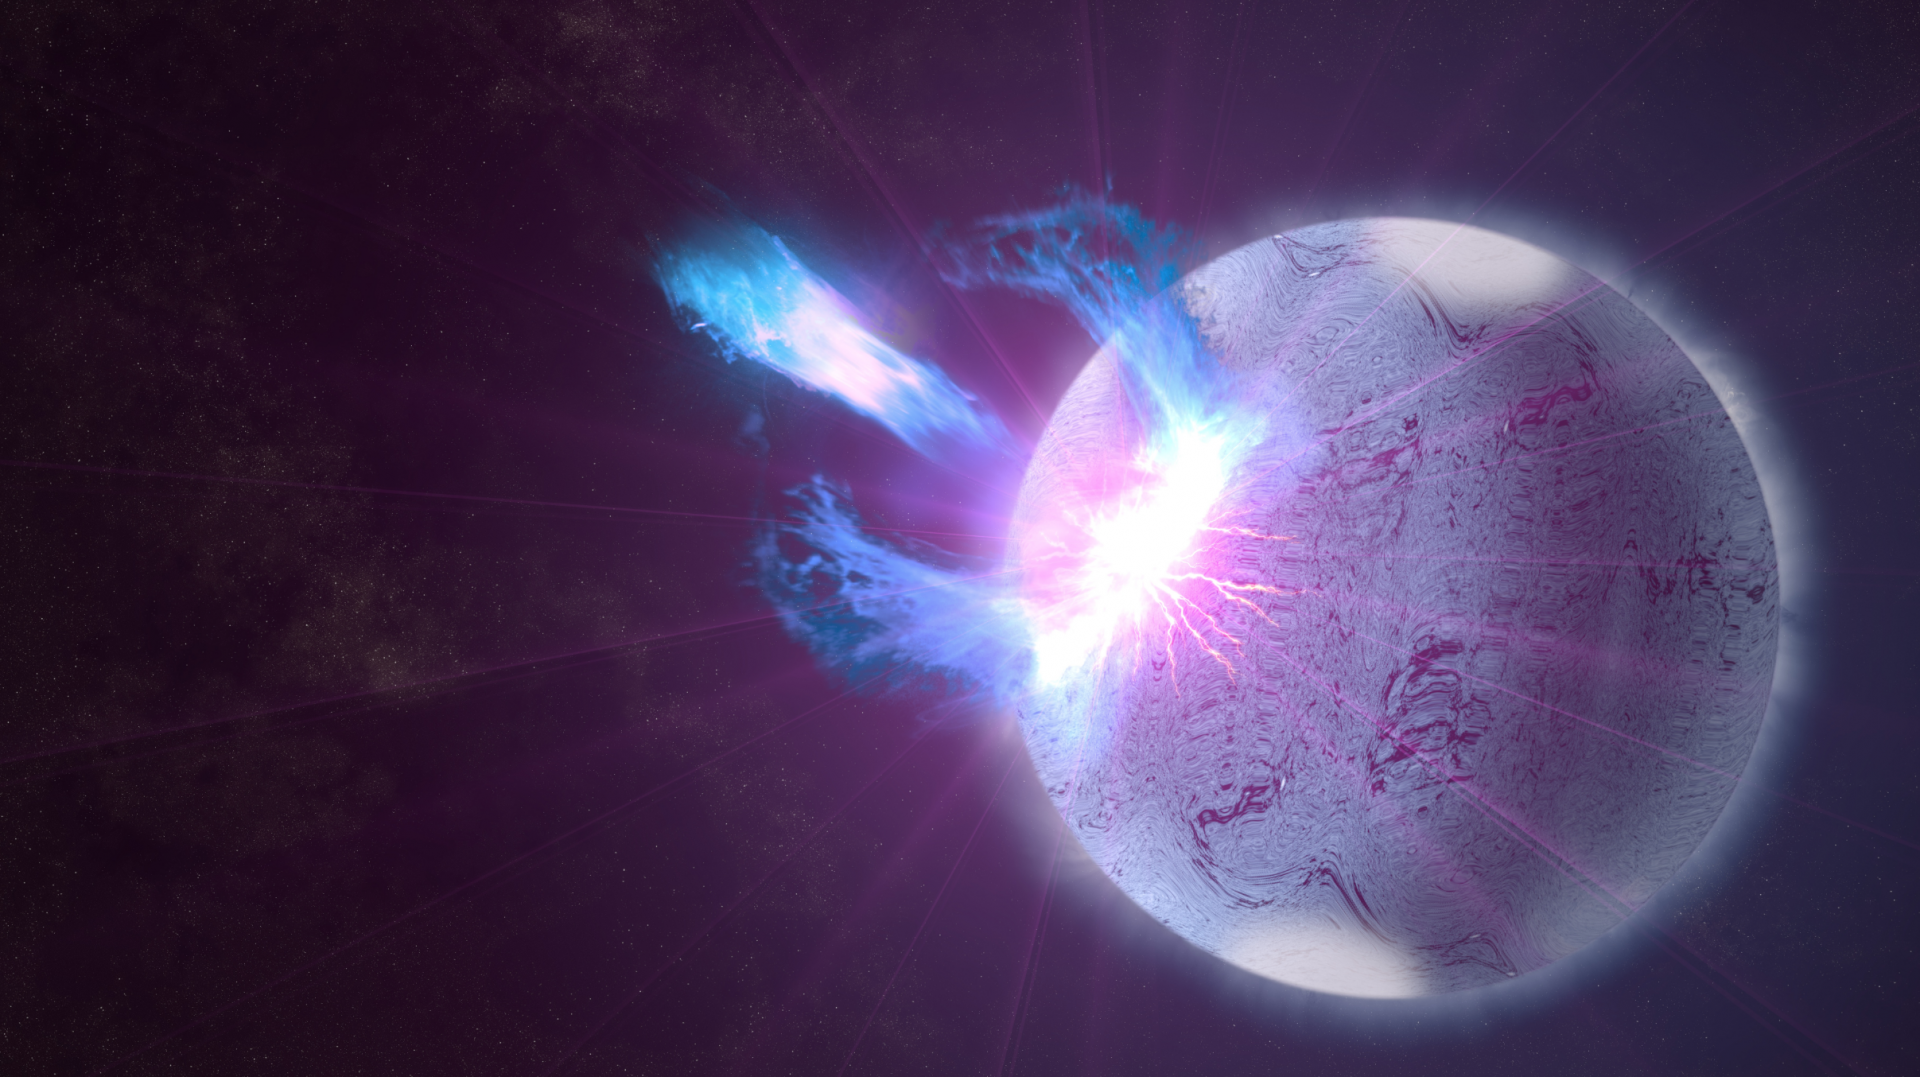 Magnetar body image 2 - ستاره لرزه چیست؟ و چطور ستاره ها را تحت تاثیر قرار می دهد؟